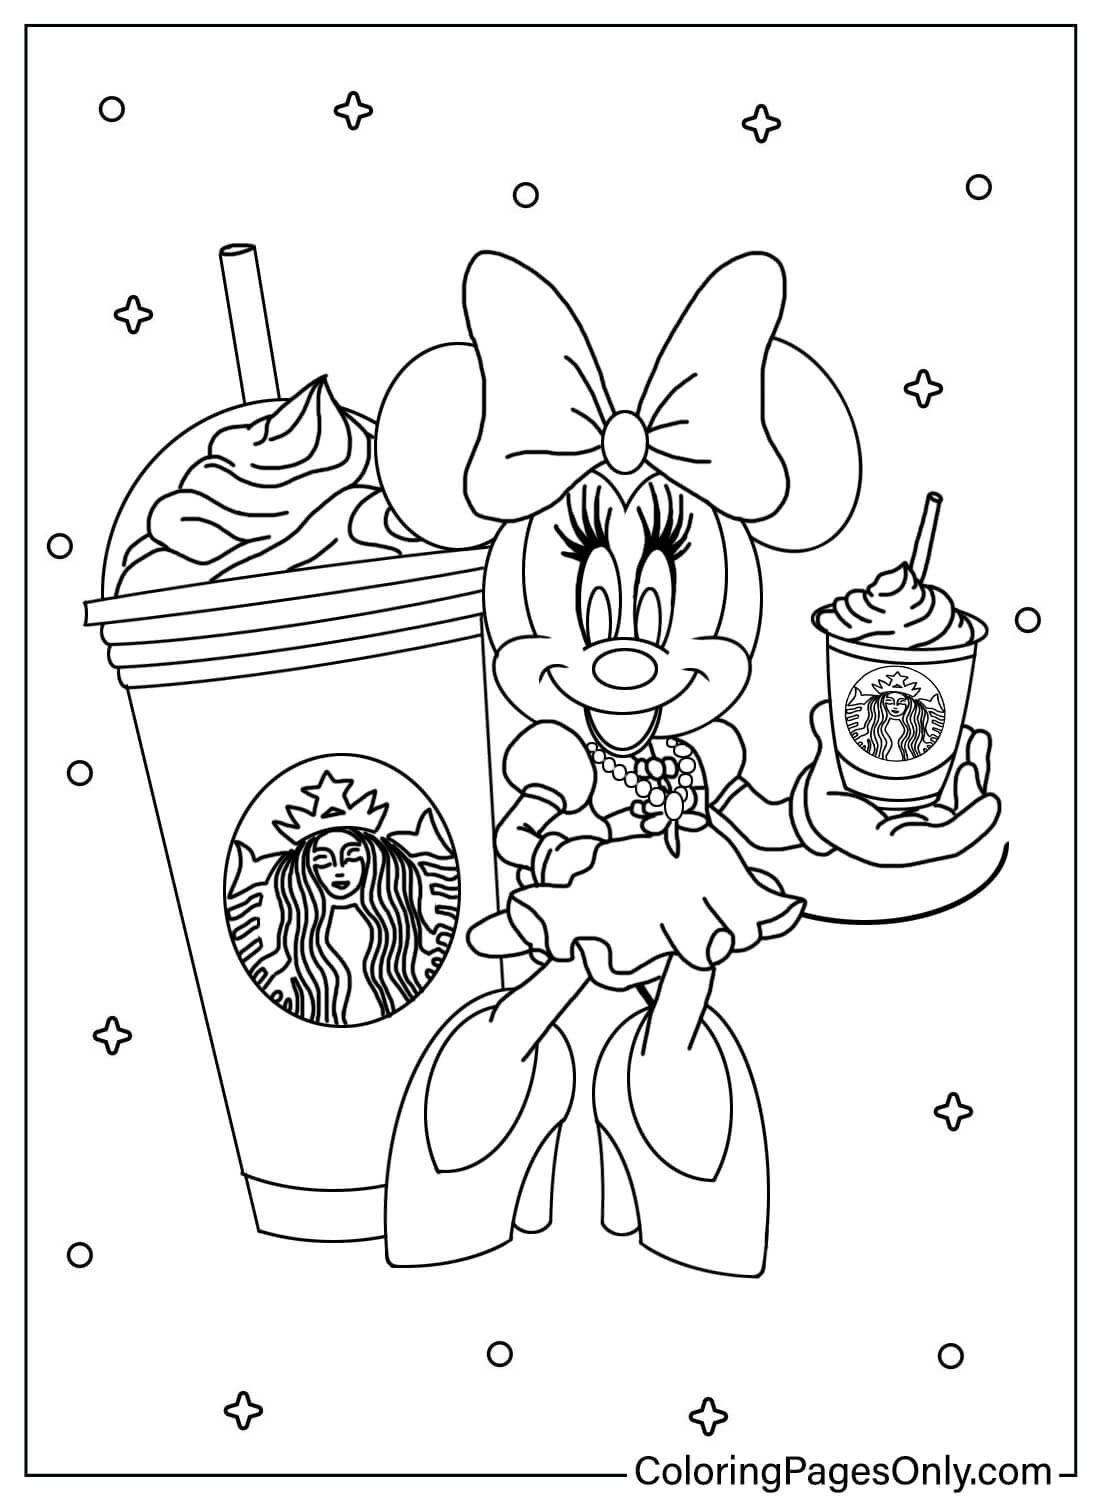 Kleurplaat Minnie Mouse met Starbucks van Minnie Mouse